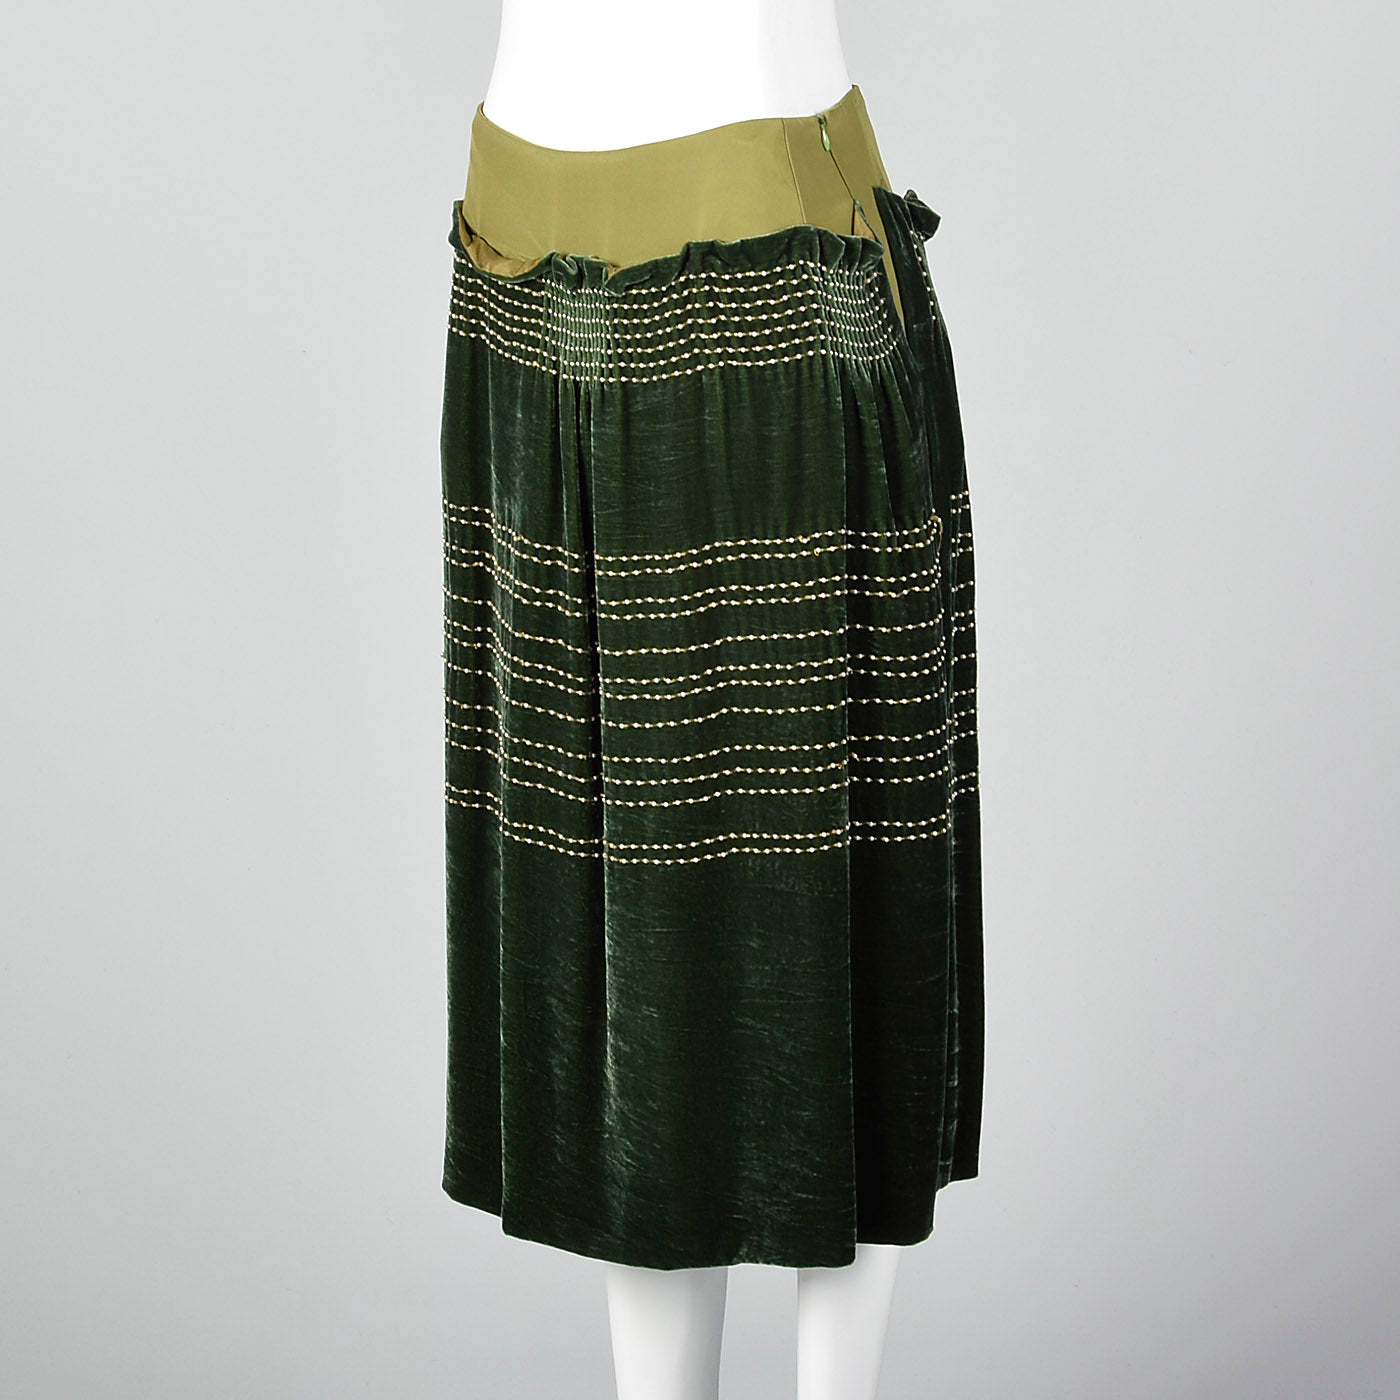 1990s Green Velvet Skirt with Beads